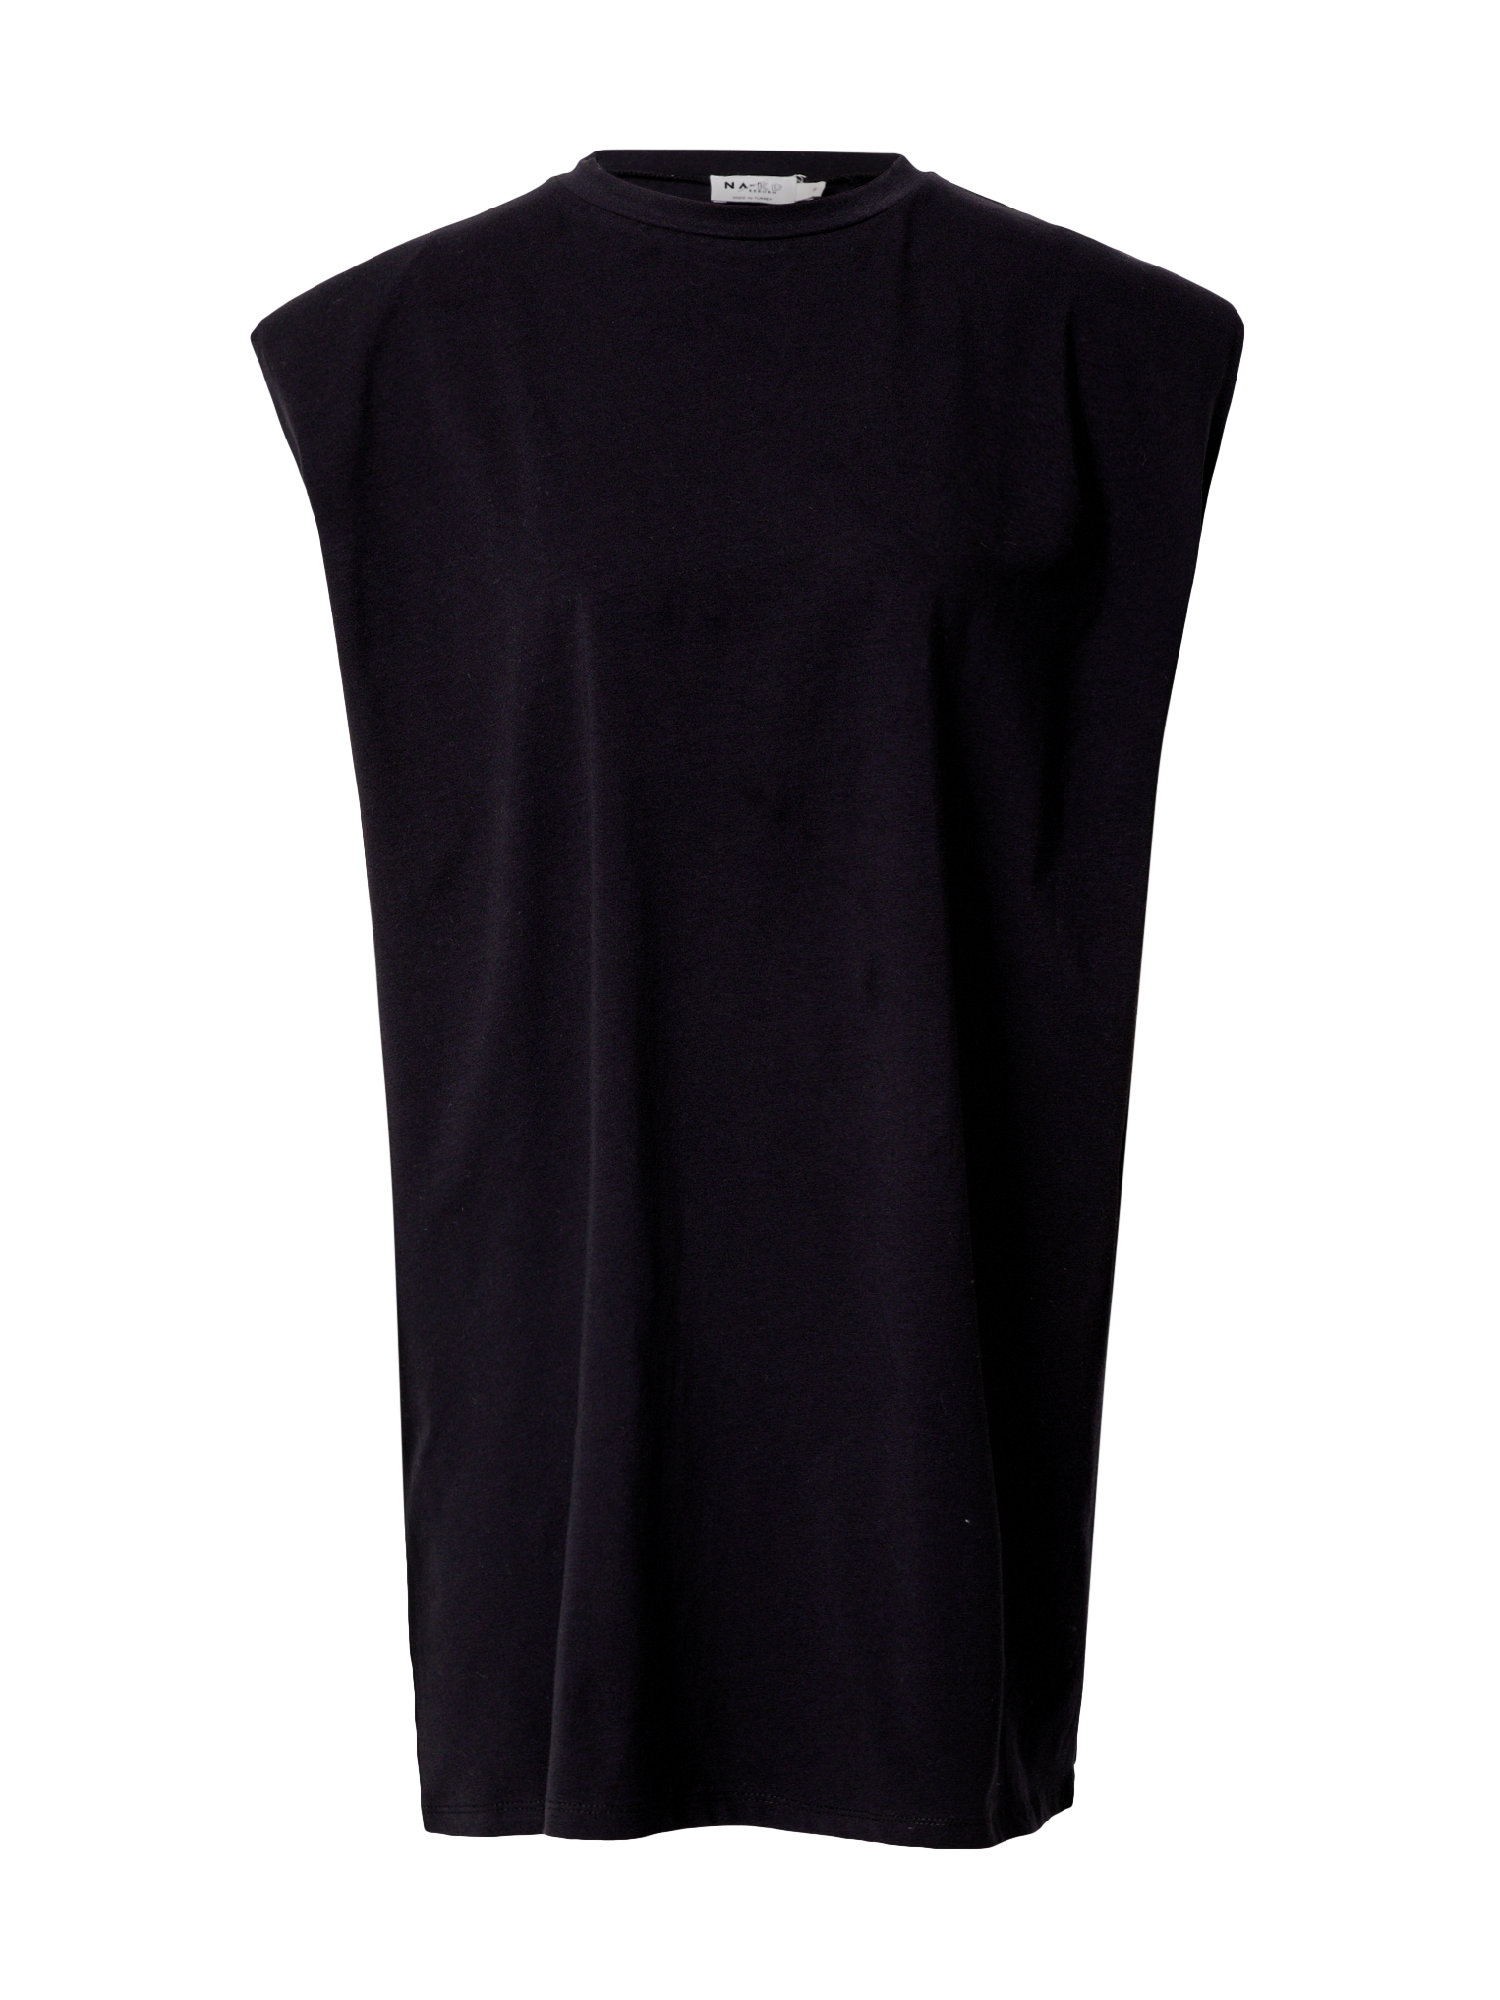 Odzież Kobiety NA-KD Letnia sukienka w kolorze Czarnym 